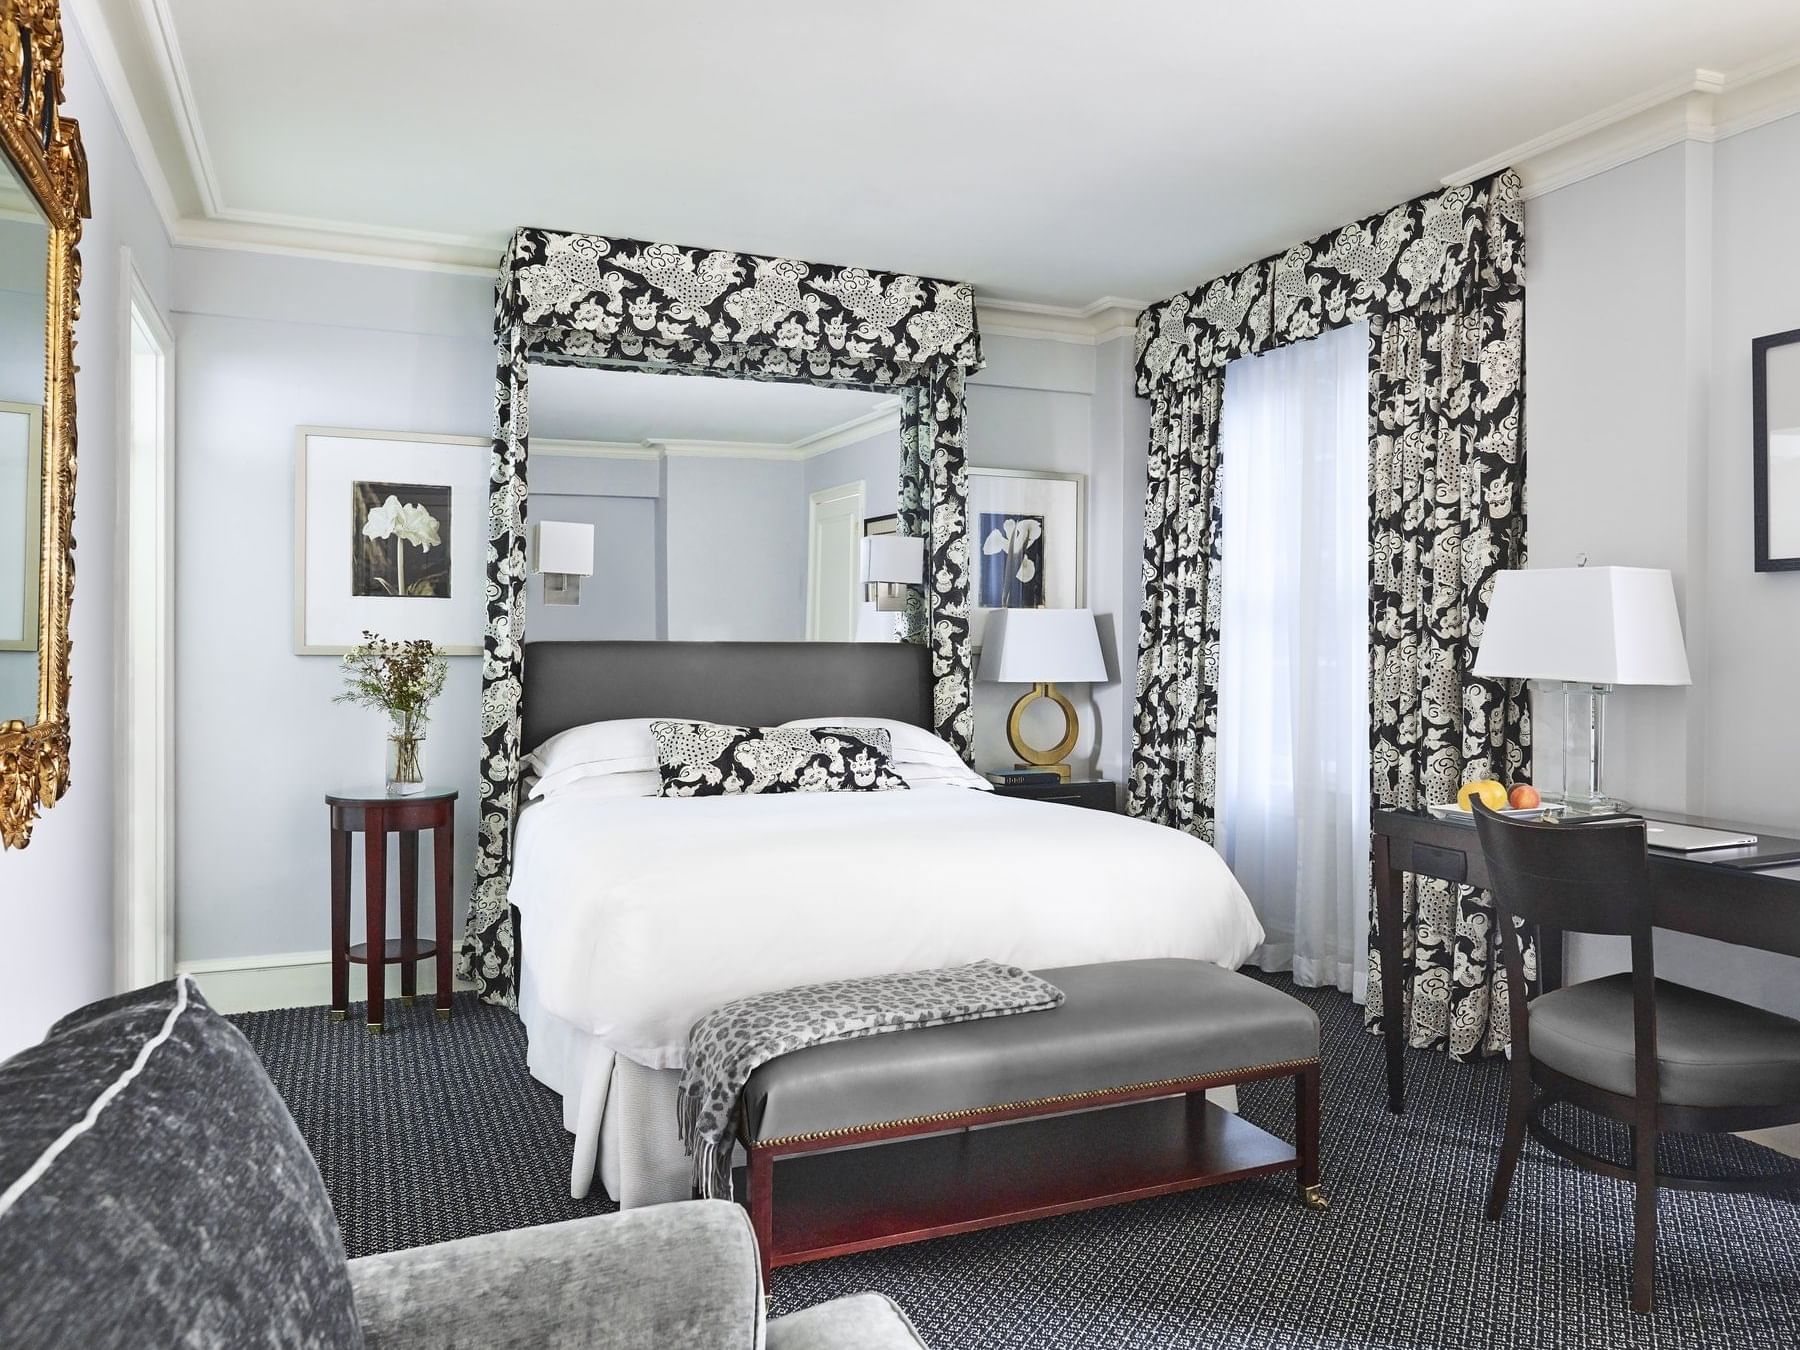 Deluxe Guestroom with queen bed
atThe Eliot Hotel 